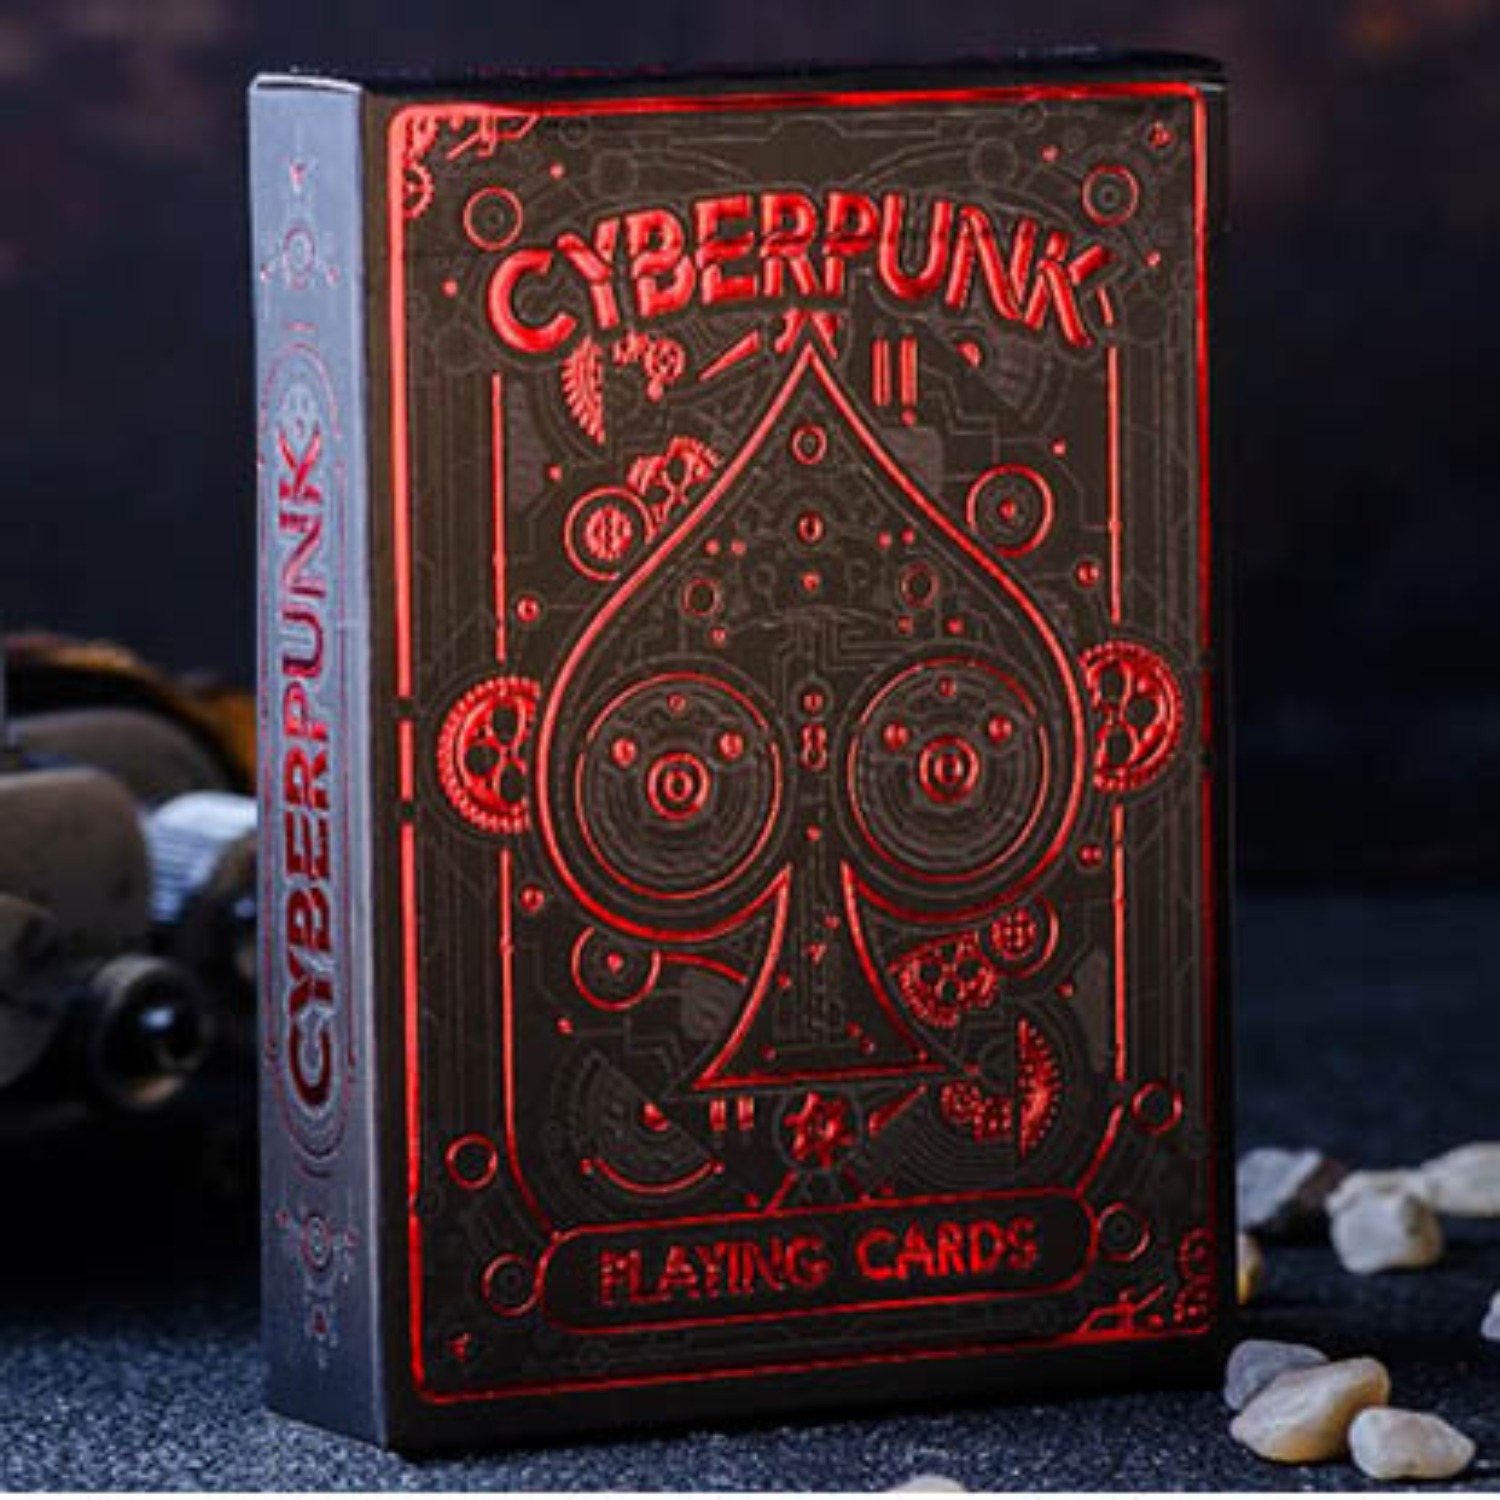 [사이버펑크 레드]Cyberpunk Red by Elephant Playing Cards